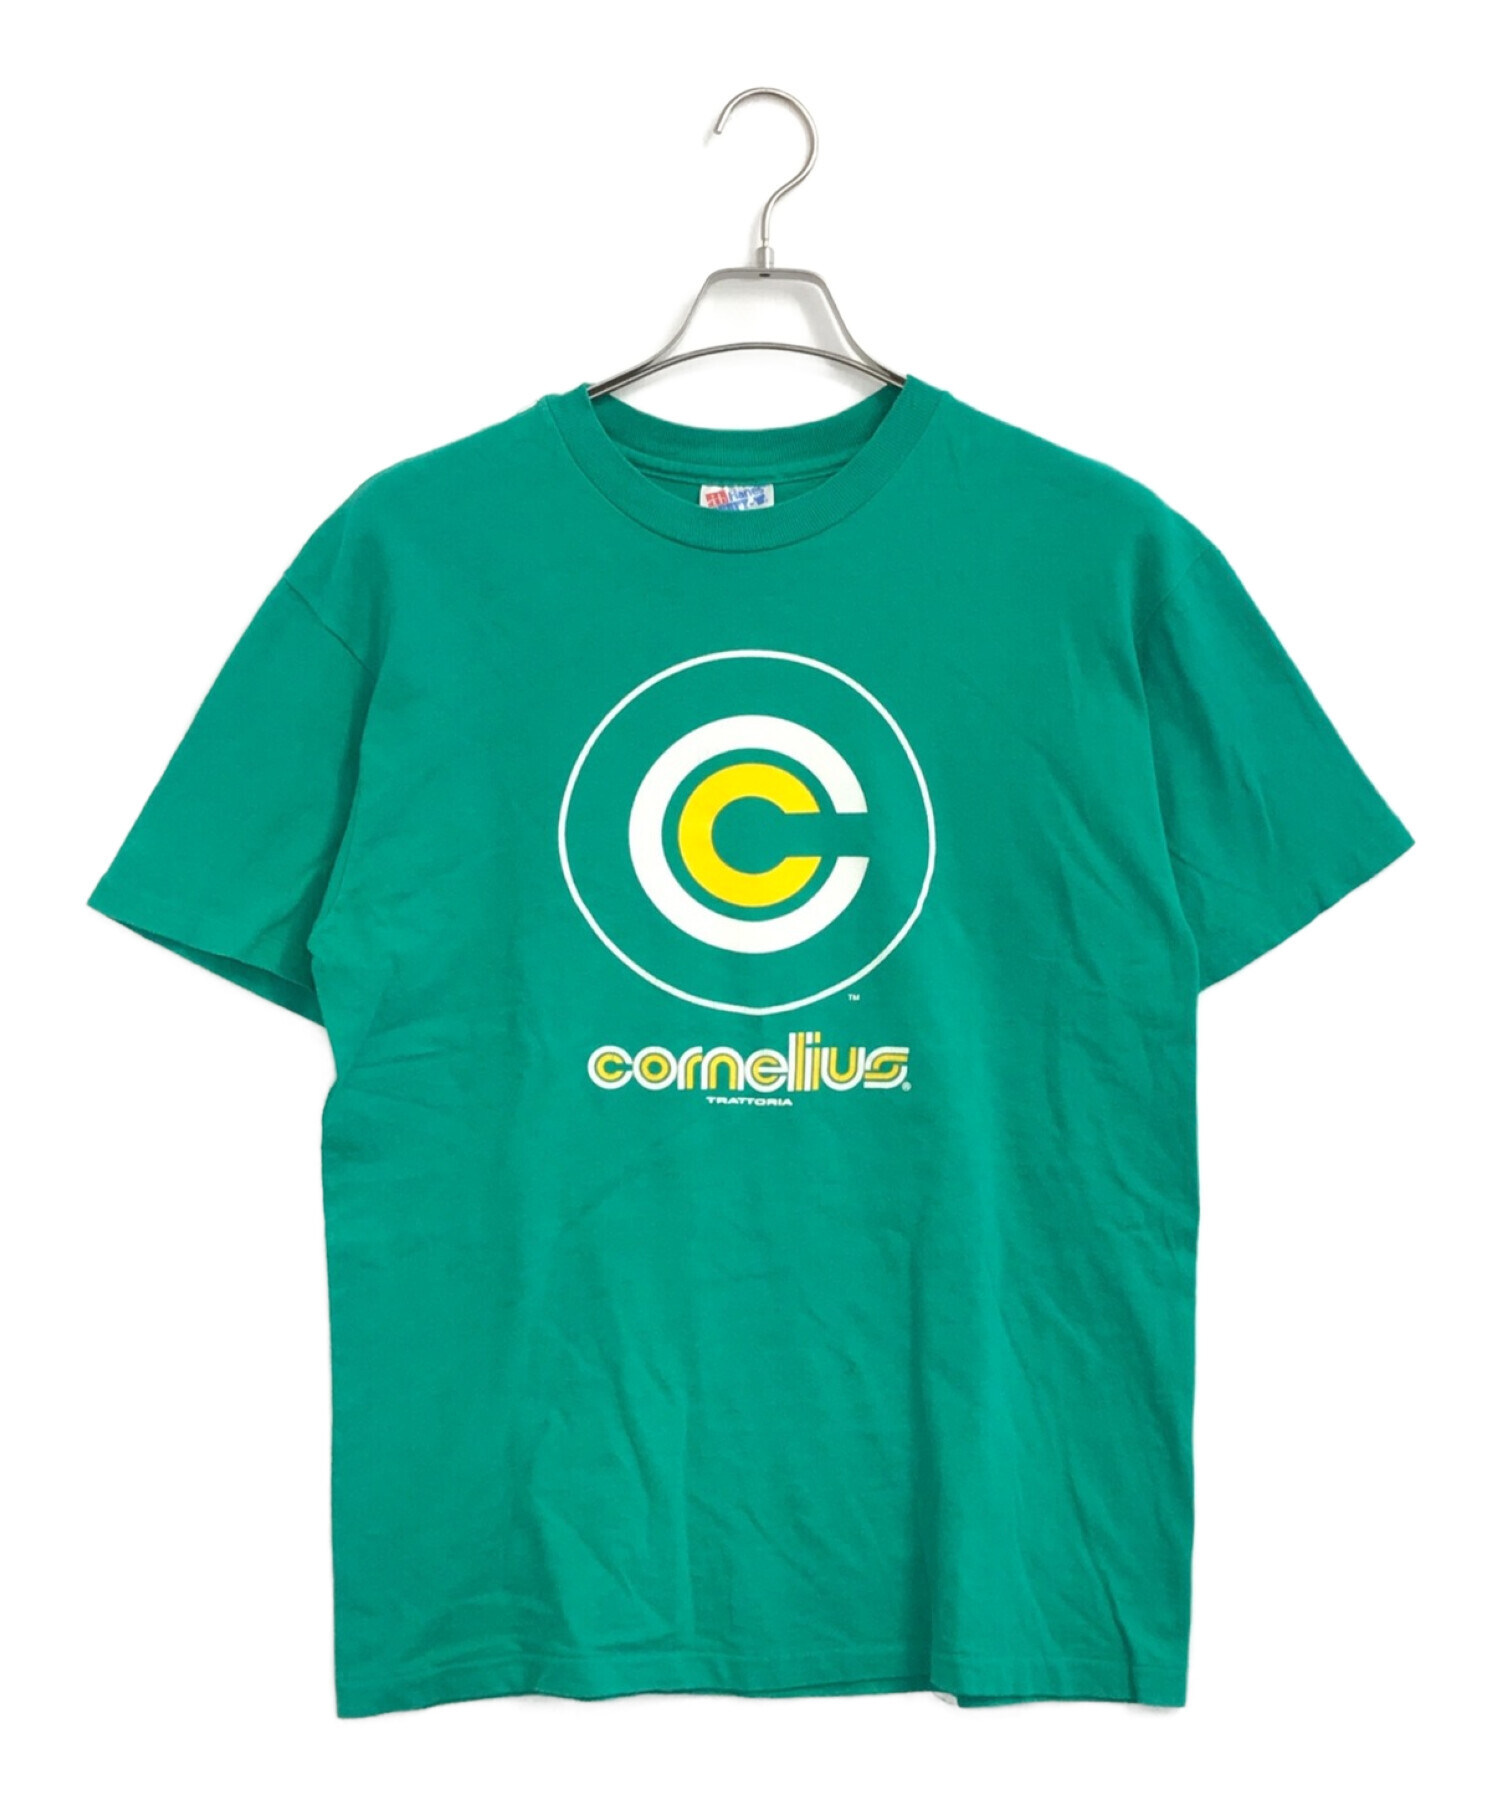 バンドTシャツ (バンドTシャツ) [古着]Cornelius 90sジャパニーズバンドTEE グリーン サイズ:M